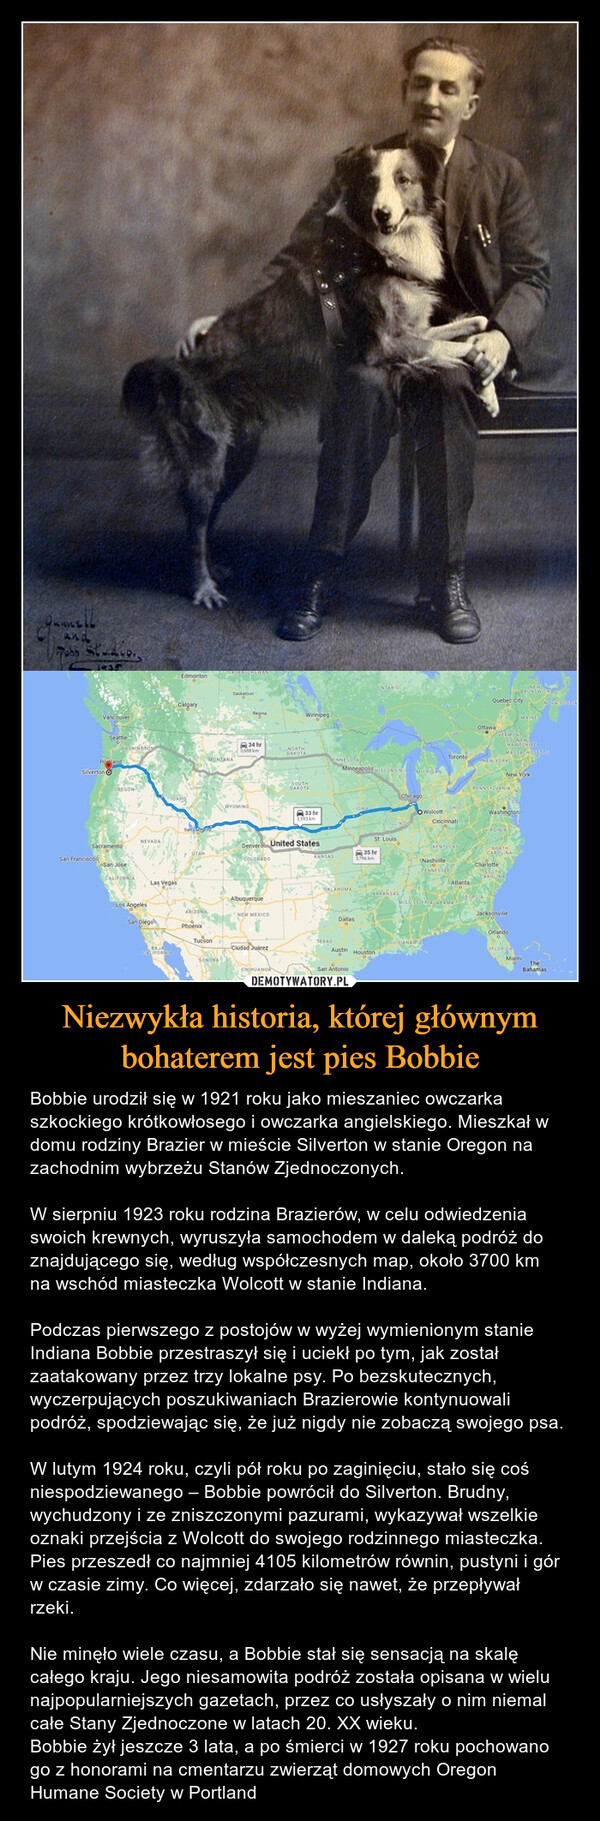 Niezwykła historia, której głównym bohaterem jest pies Bobbie – Bobbie urodził się w 1921 roku jako mieszaniec owczarka szkockiego krótkowłosego i owczarka angielskiego. Mieszkał w domu rodziny Brazier w mieście Silverton w stanie Oregon na zachodnim wybrzeżu Stanów Zjednoczonych.W sierpniu 1923 roku rodzina Brazierów, w celu odwiedzenia swoich krewnych, wyruszyła samochodem w daleką podróż do znajdującego się, według współczesnych map, około 3700 km na wschód miasteczka Wolcott w stanie Indiana.Podczas pierwszego z postojów w wyżej wymienionym stanie Indiana Bobbie przestraszył się i uciekł po tym, jak został zaatakowany przez trzy lokalne psy. Po bezskutecznych, wyczerpujących poszukiwaniach Brazierowie kontynuowali podróż, spodziewając się, że już nigdy nie zobaczą swojego psa.W lutym 1924 roku, czyli pół roku po zaginięciu, stało się coś niespodziewanego – Bobbie powrócił do Silverton. Brudny, wychudzony i ze zniszczonymi pazurami, wykazywał wszelkie oznaki przejścia z Wolcott do swojego rodzinnego miasteczka. Pies przeszedł co najmniej 4105 kilometrów równin, pustyni i gór w czasie zimy. Co więcej, zdarzało się nawet, że przepływał rzeki. Nie minęło wiele czasu, a Bobbie stał się sensacją na skalę całego kraju. Jego niesamowita podróż została opisana w wielu najpopularniejszych gazetach, przez co usłyszały o nim niemal całe Stany Zjednoczone w latach 20. XX wieku. Bobbie żył jeszcze 3 lata, a po śmierci w 1927 roku pochowano go z honorami na cmentarzu zwierząt domowych Oregon Humane Society w Portland 